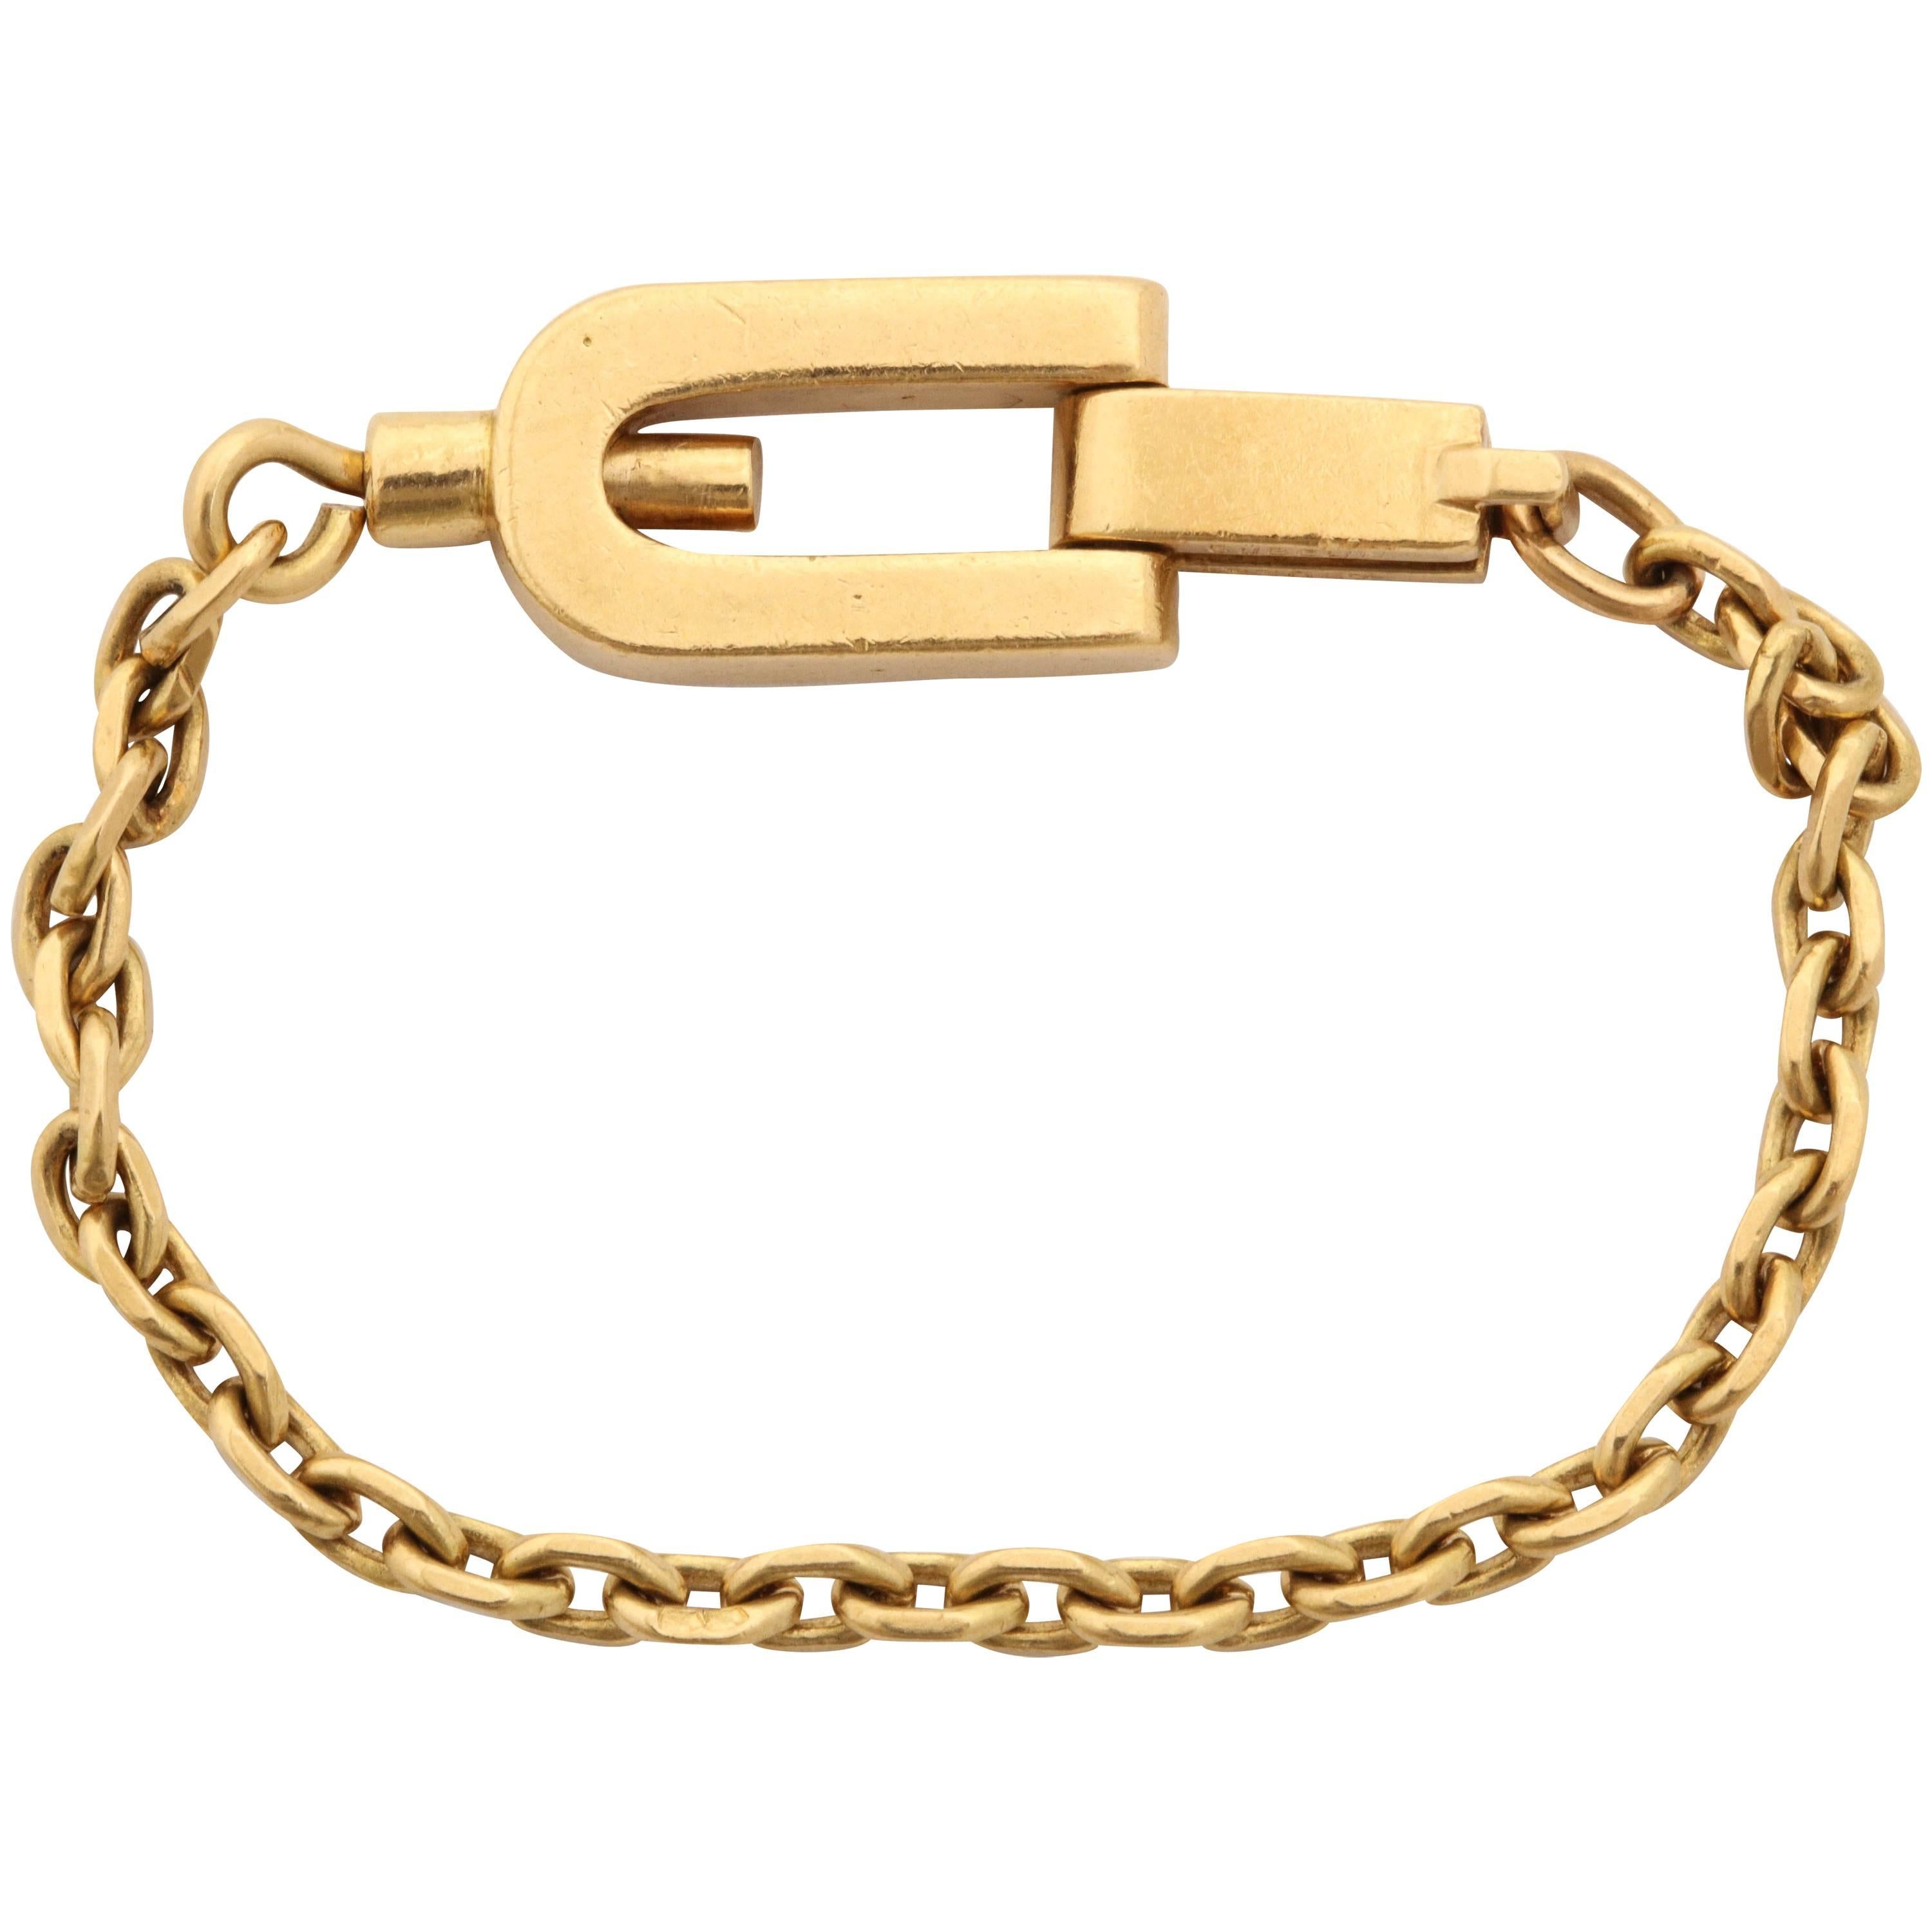 1950s Gubelin France Open Link Gold Lock Fancy Key Chain